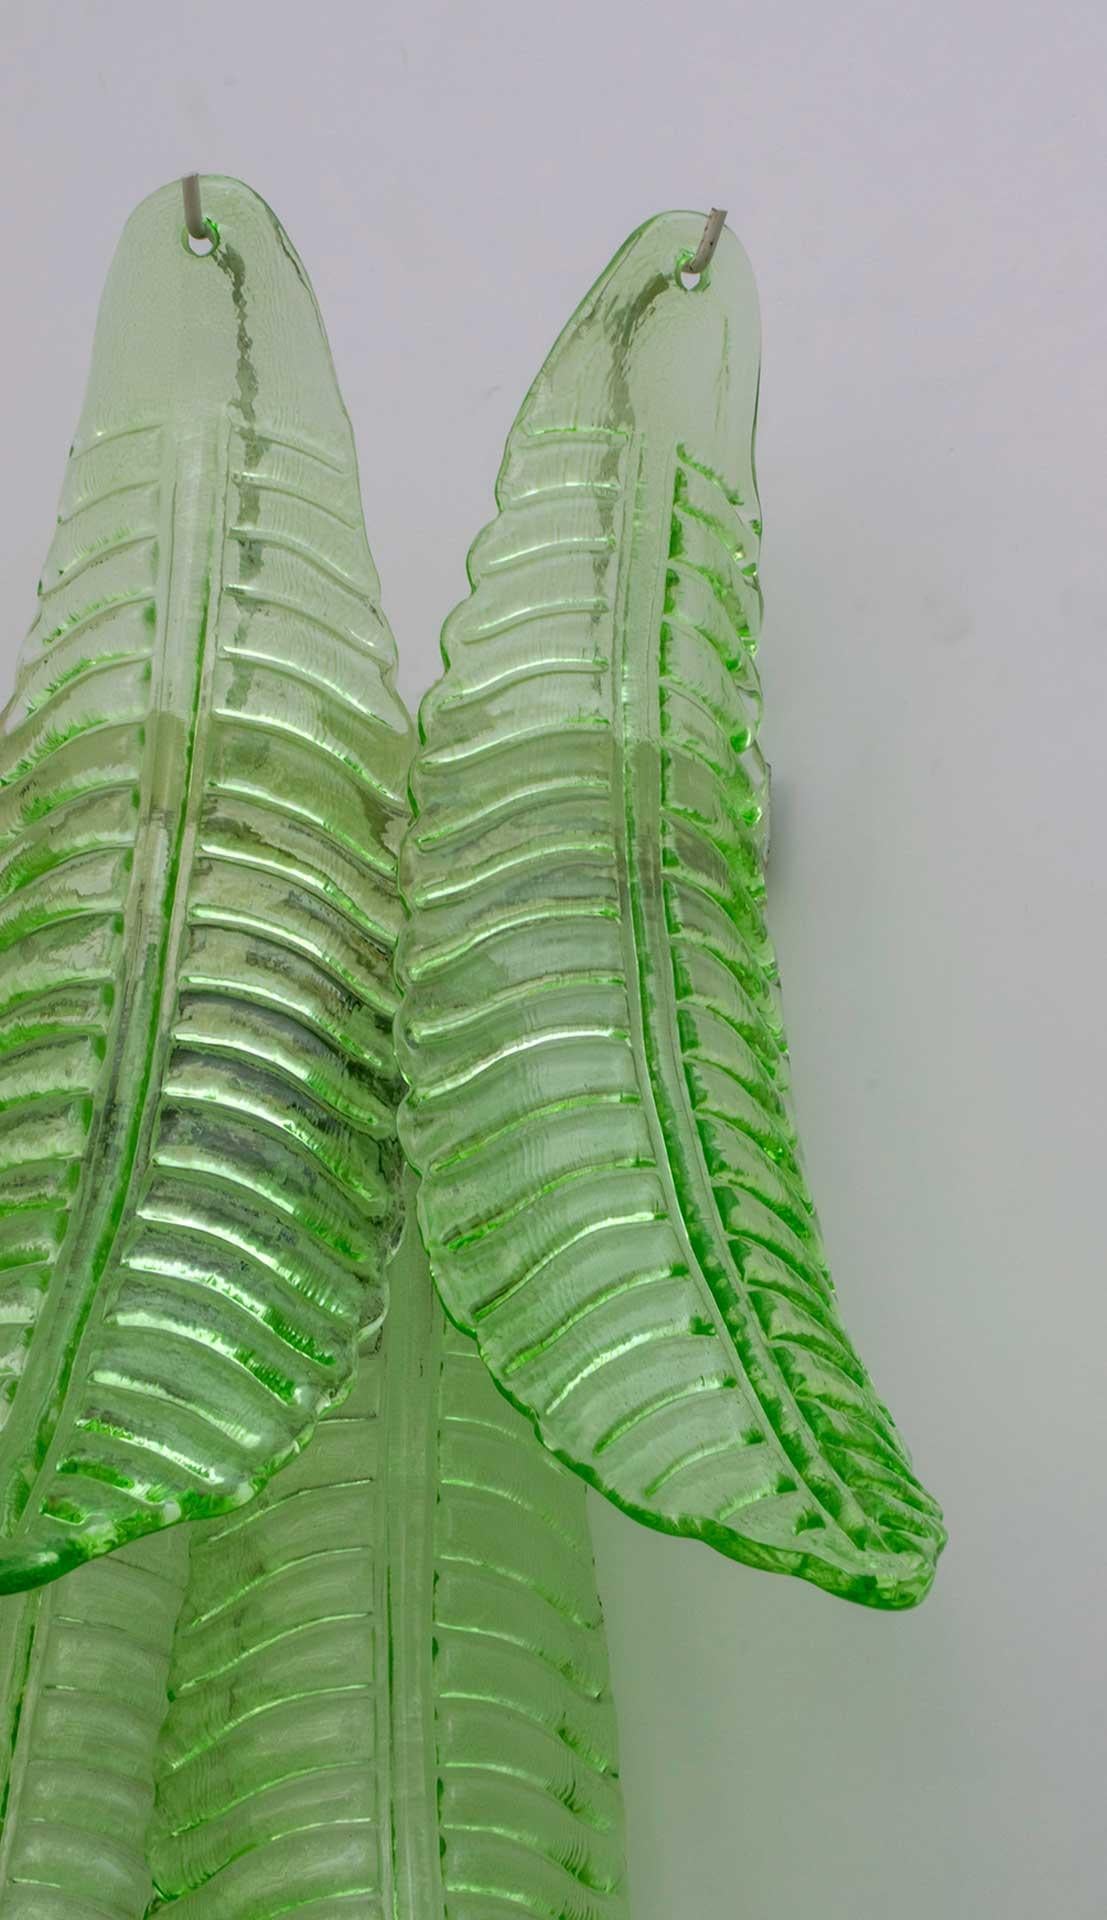 Paar grüne Wandleuchten aus geblasenem Murano-Glas, Metallhalterung, zwei Glühbirnen.
Diese Wandlampen sind auch Skulpturen, die die Blätter einer Palme nachbilden.